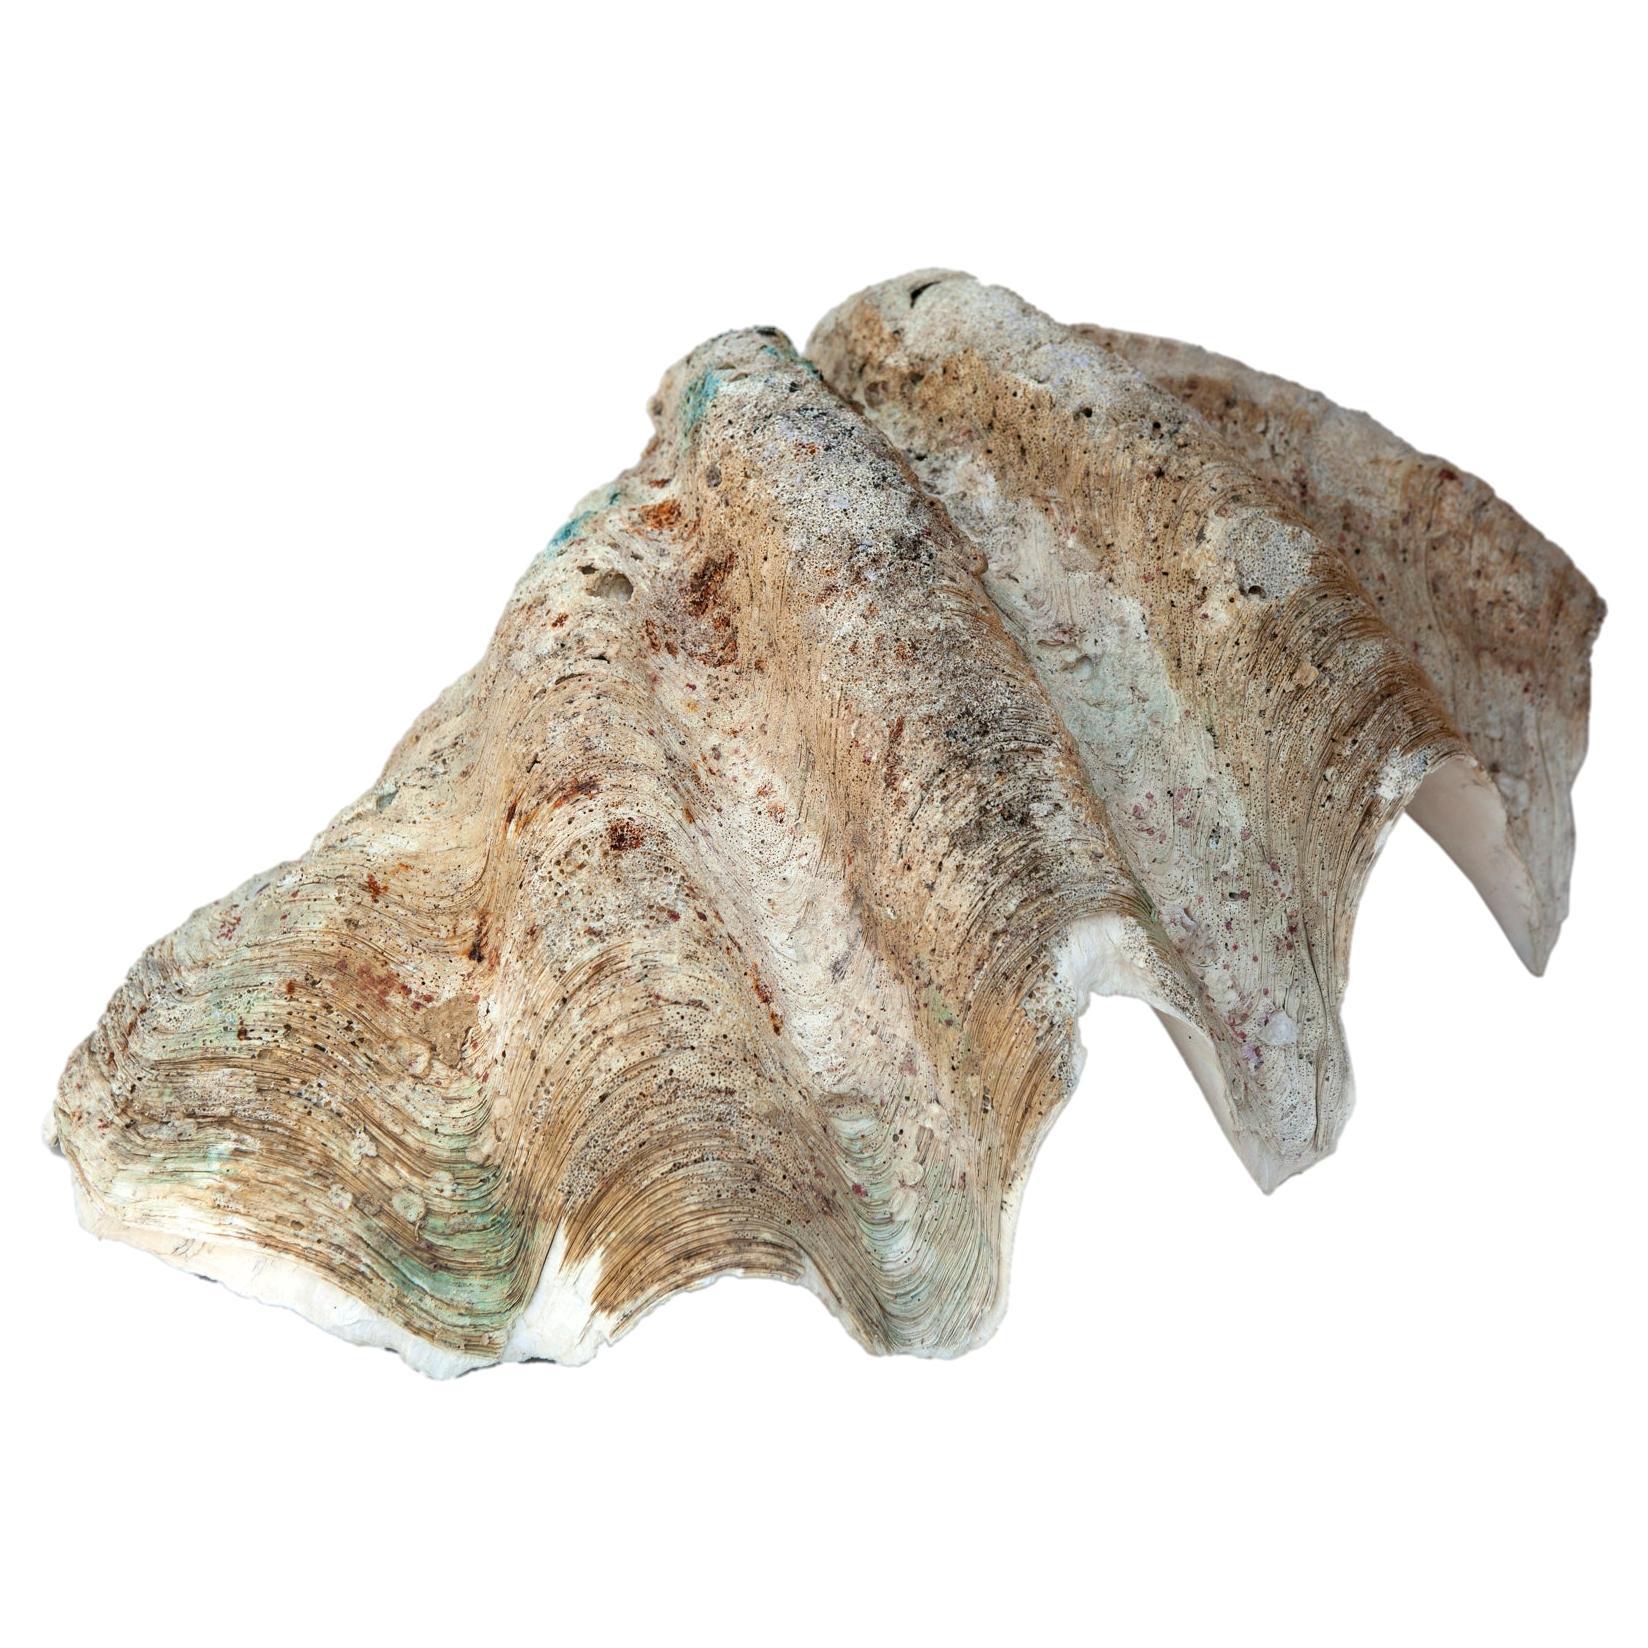 Natürliches Muschelschalen-Exemplar von Tridacna Gigas aus dem Südpazifik.
Dieses Stück ist wunderschön und skulptural und eignet sich auch hervorragend als Behälter.
Dieses seltene natürliche Exemplar mit schimmerndem rosafarbenem Inneren und